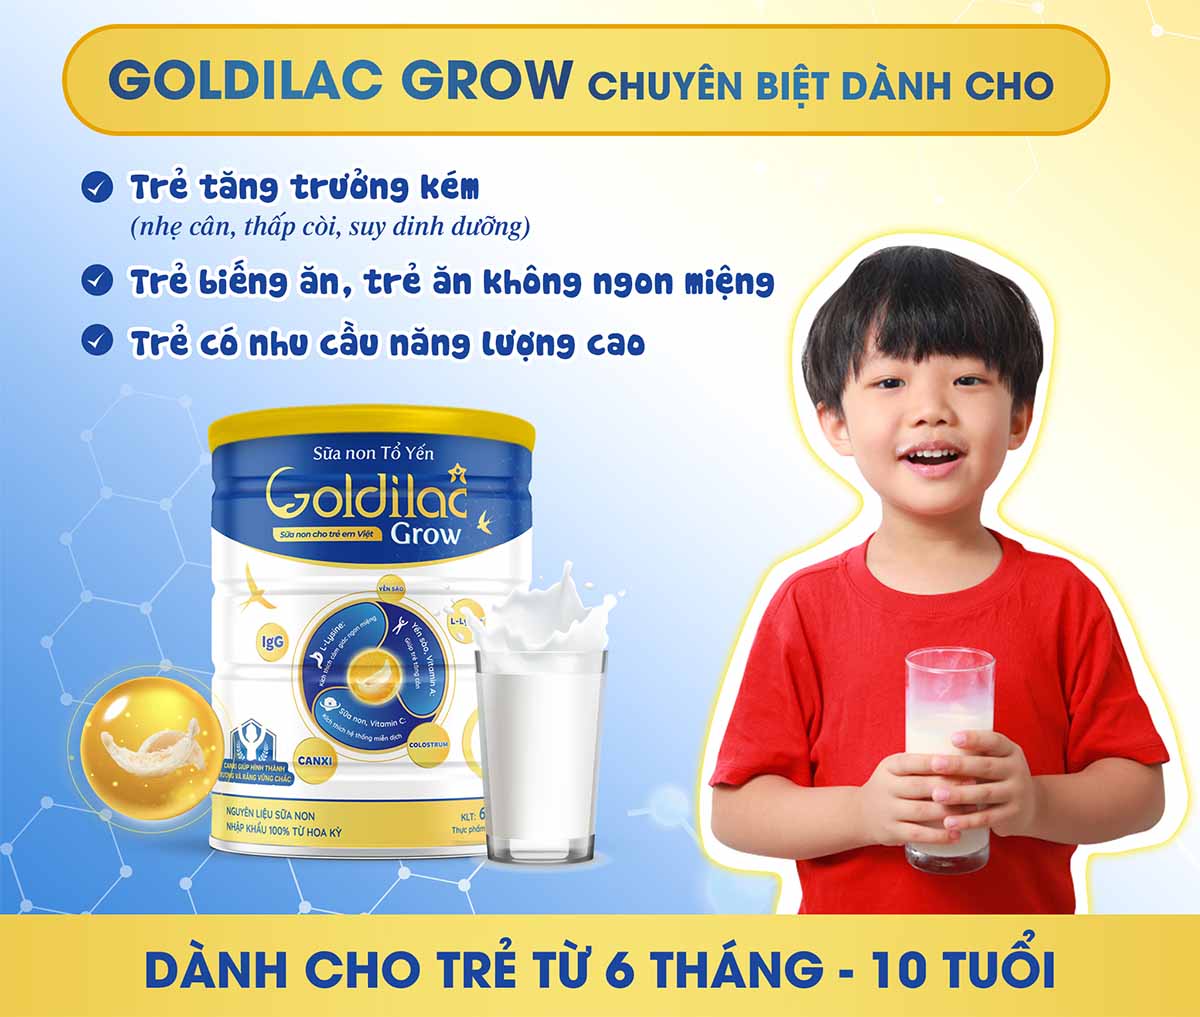 Sữa non Tổ Yến Goldilac Grow giúp trẻ phát triển toàn diện